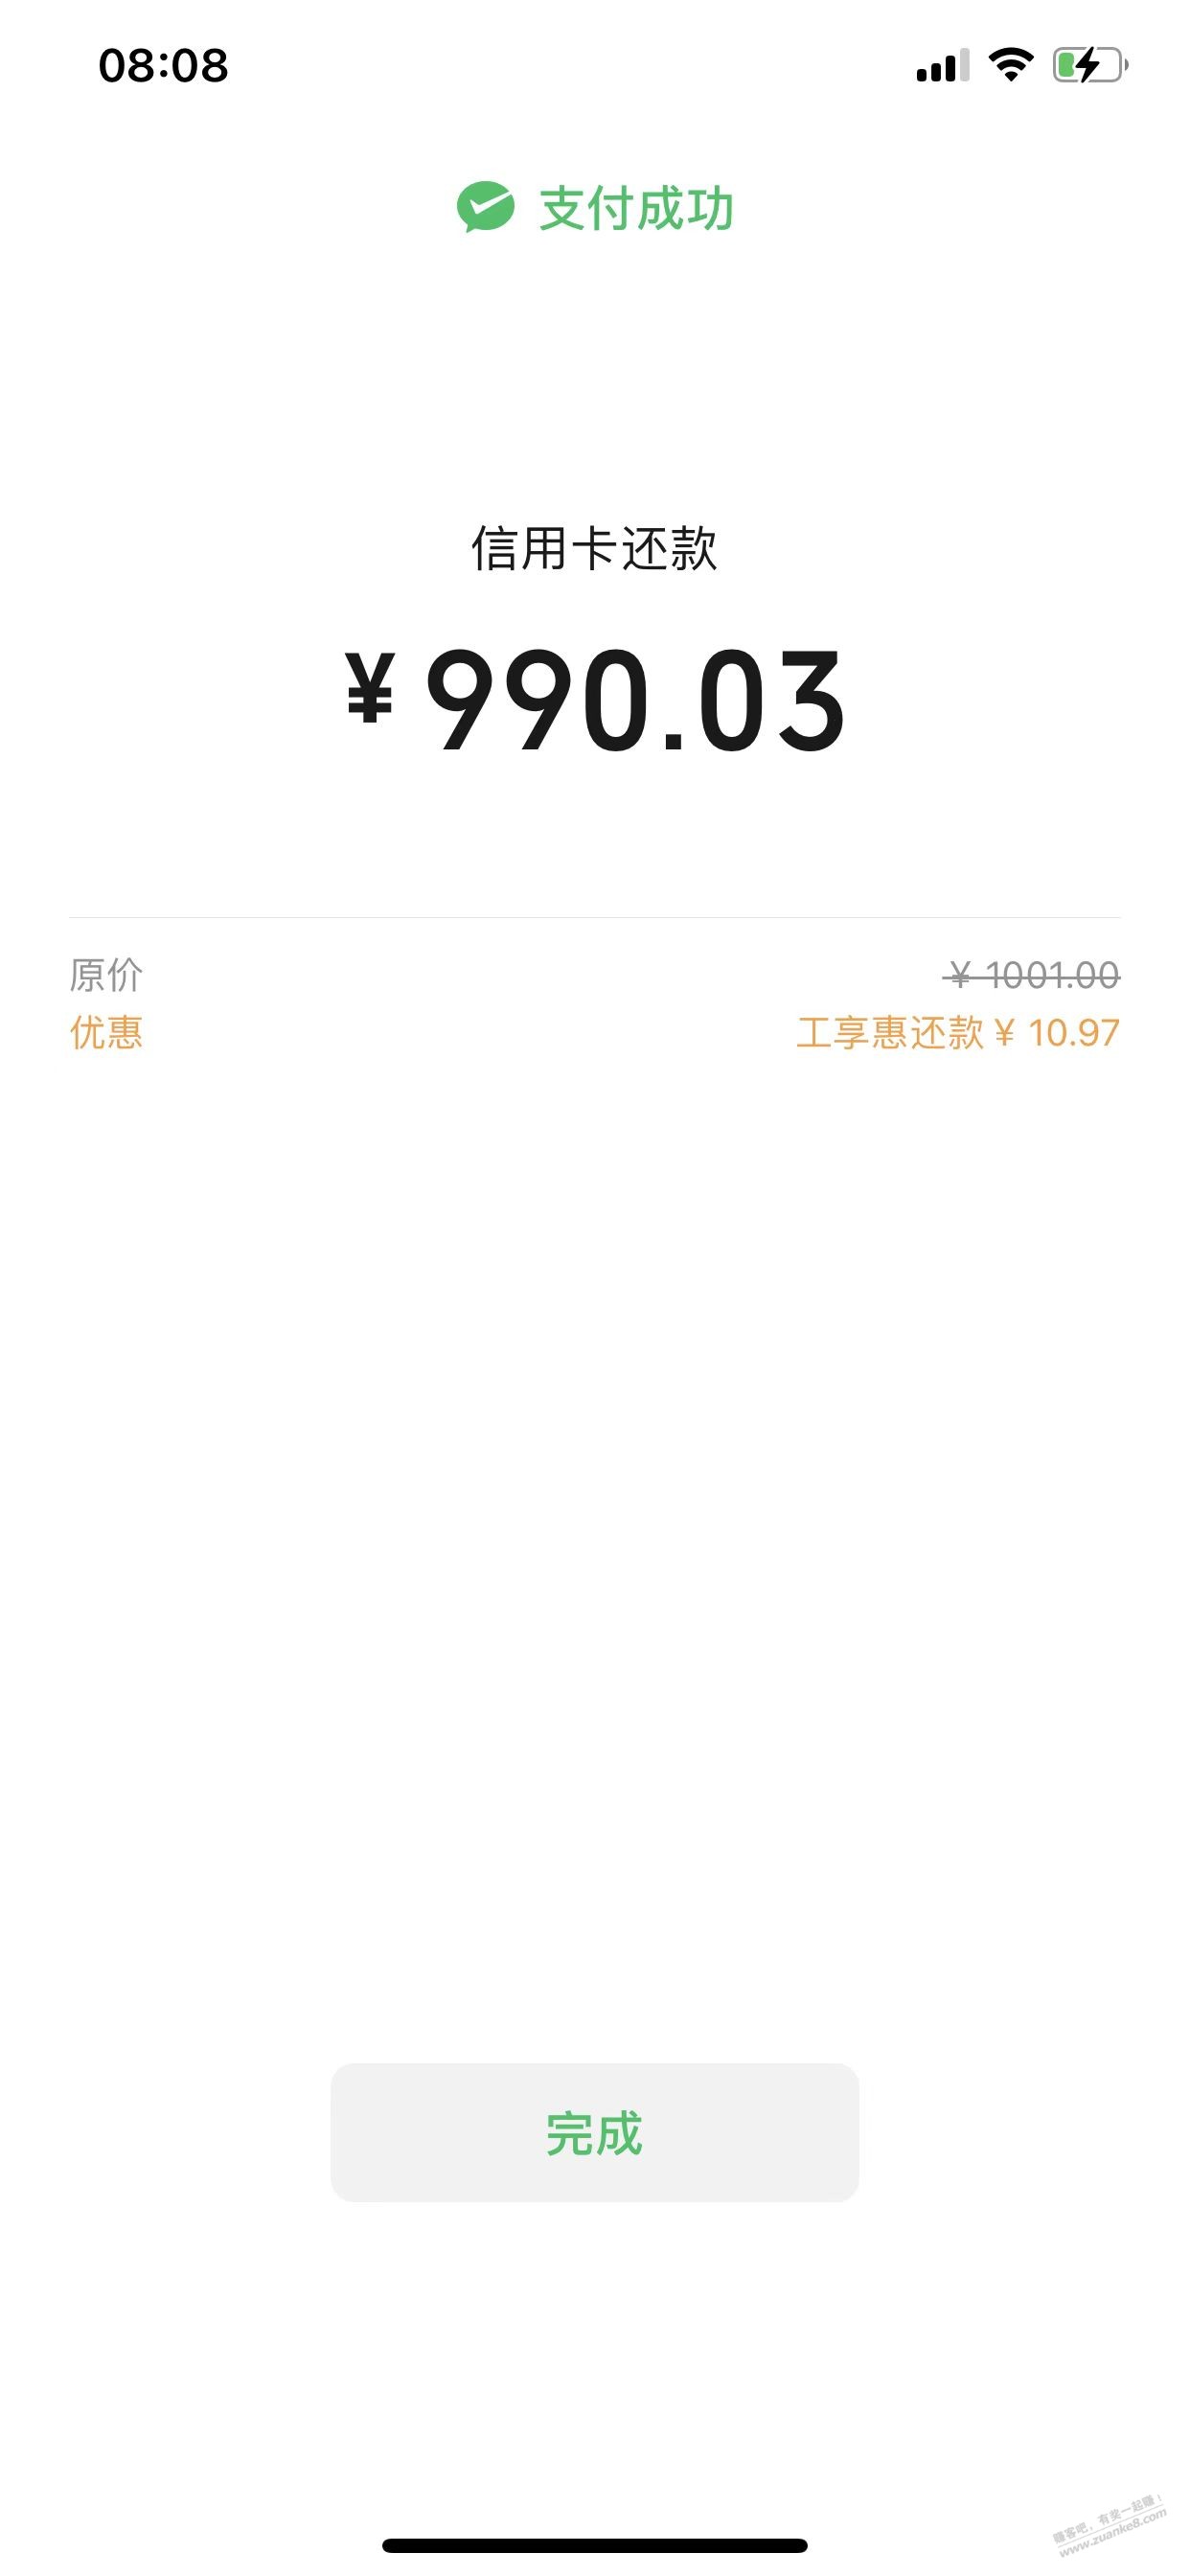 工商储蓄卡V.xxing/用卡还宽-惠小助(52huixz.com)